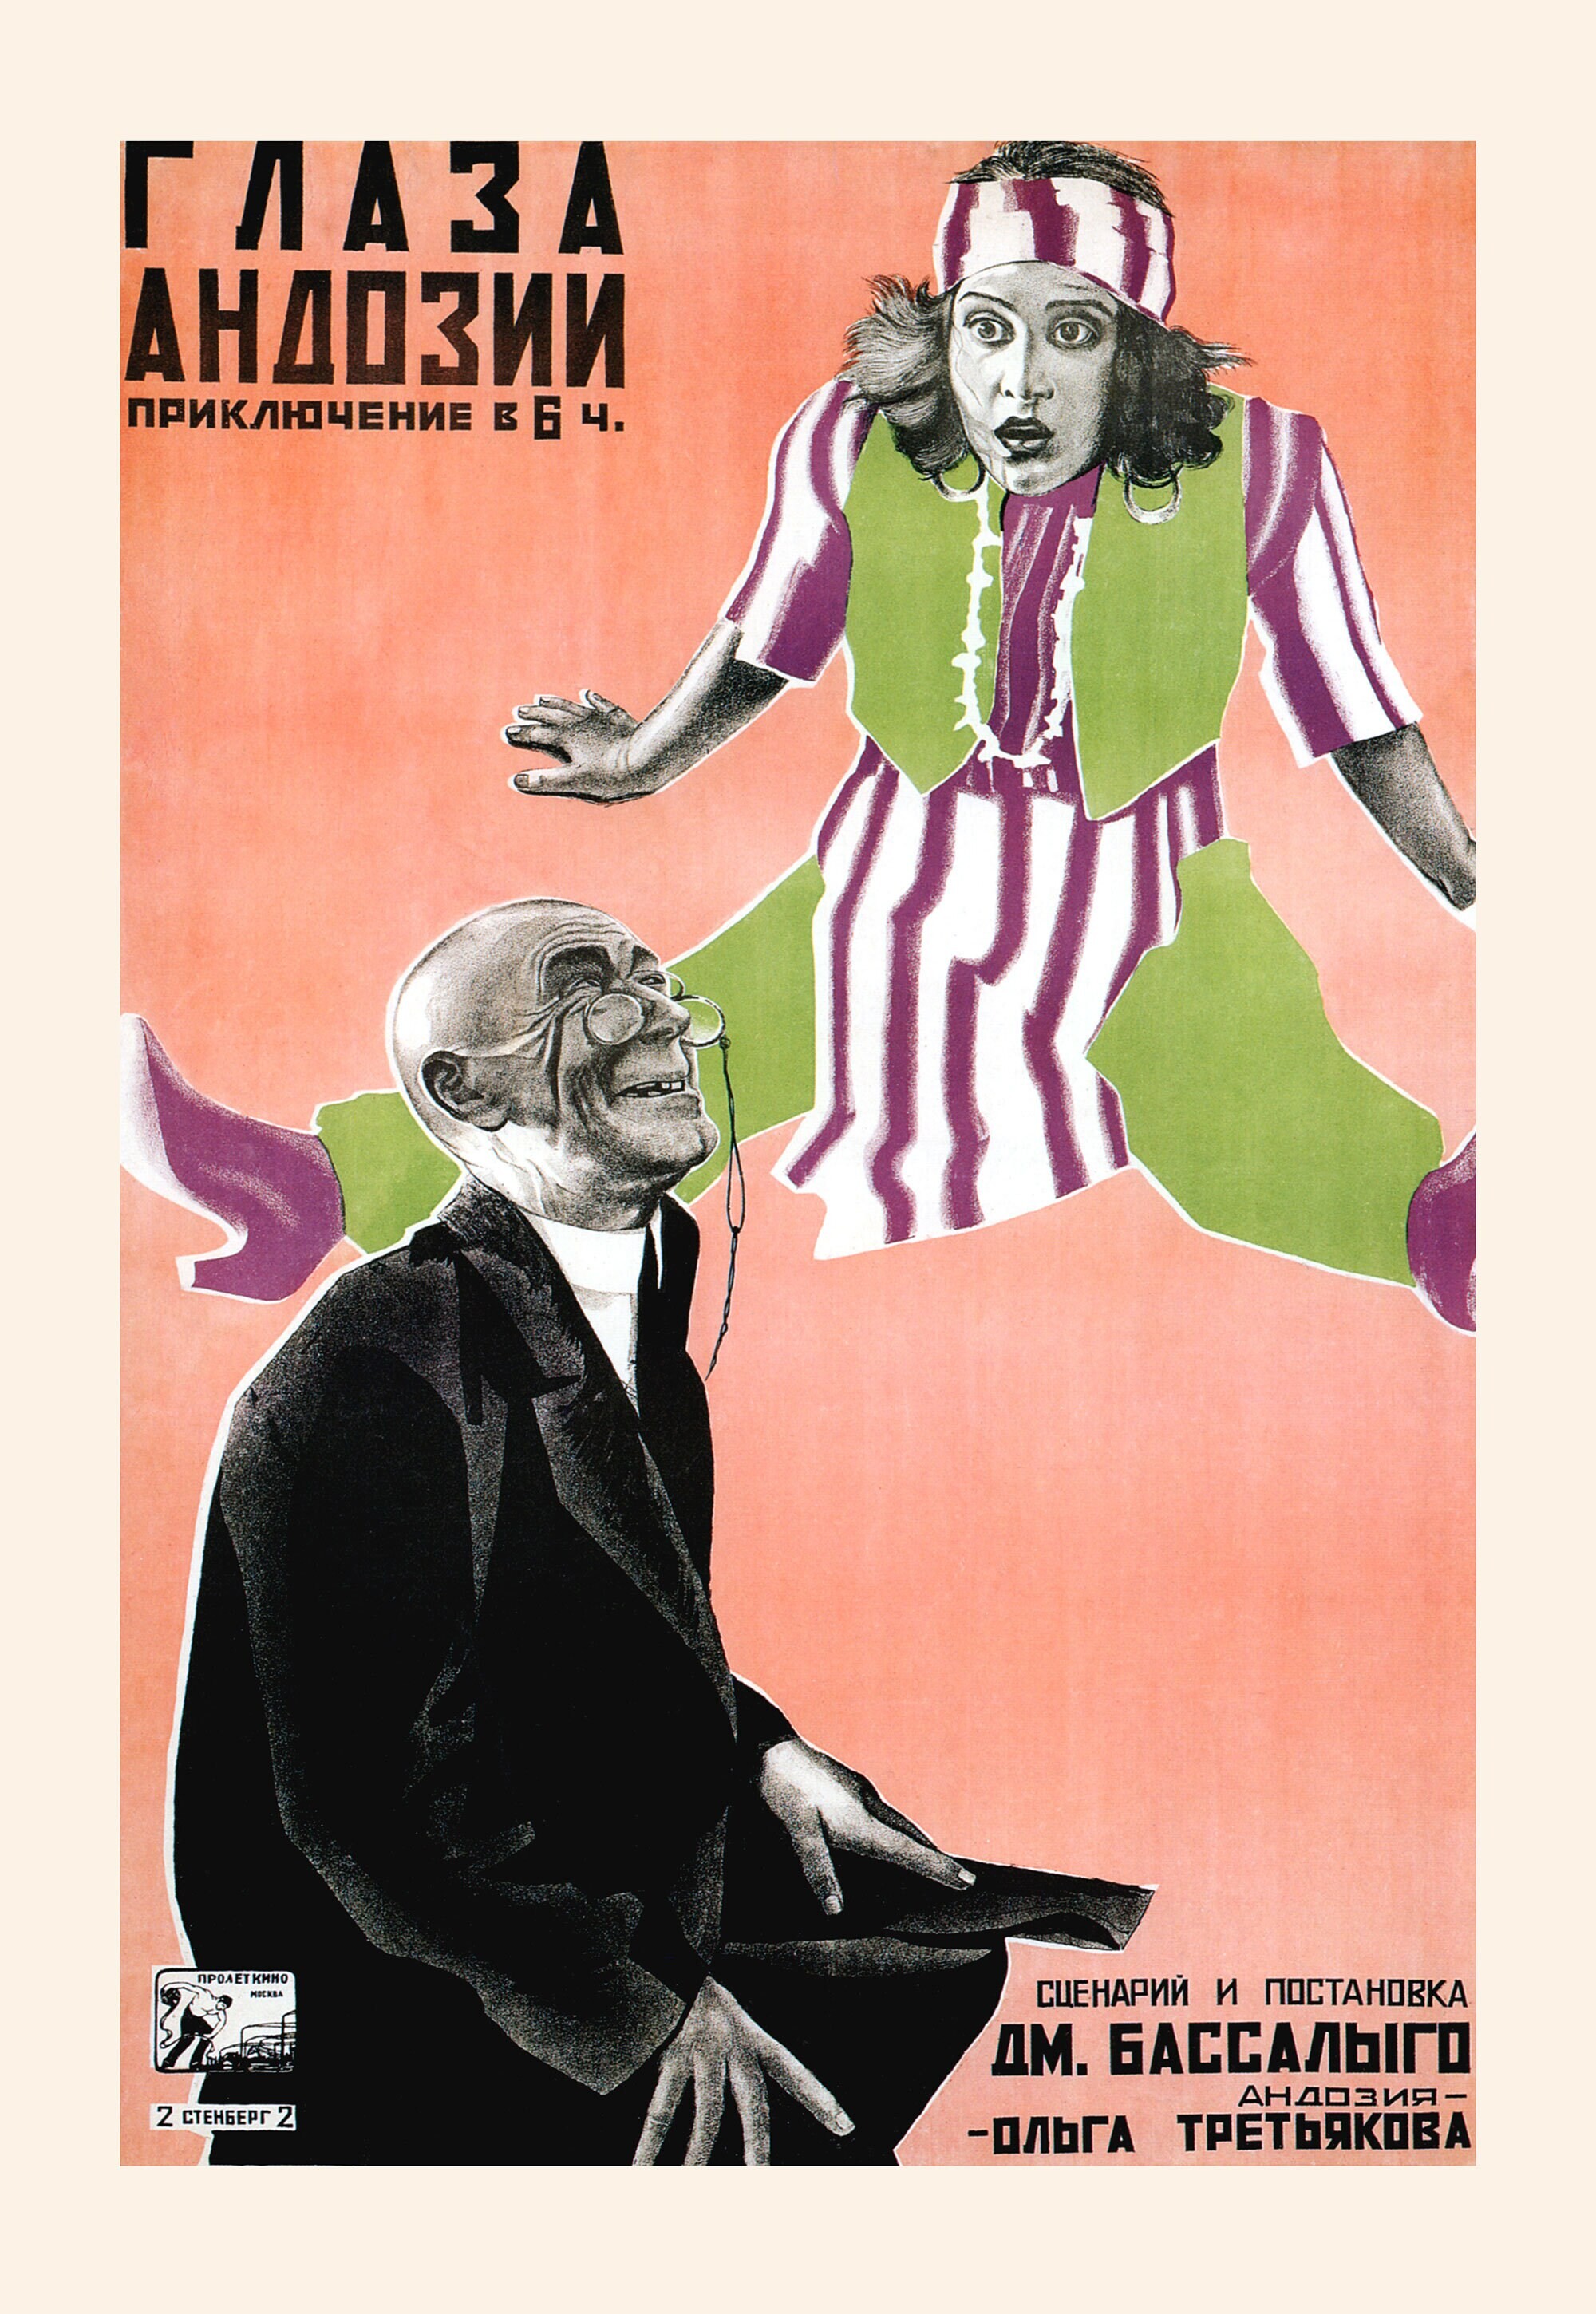 Глаза Андозии, 1926 год, режиссёр Дмитрий Бассалыго, плакат к фильму, авторы Георгий и Владимир Стенберги, (авангардное советское искусство, 1920-е)